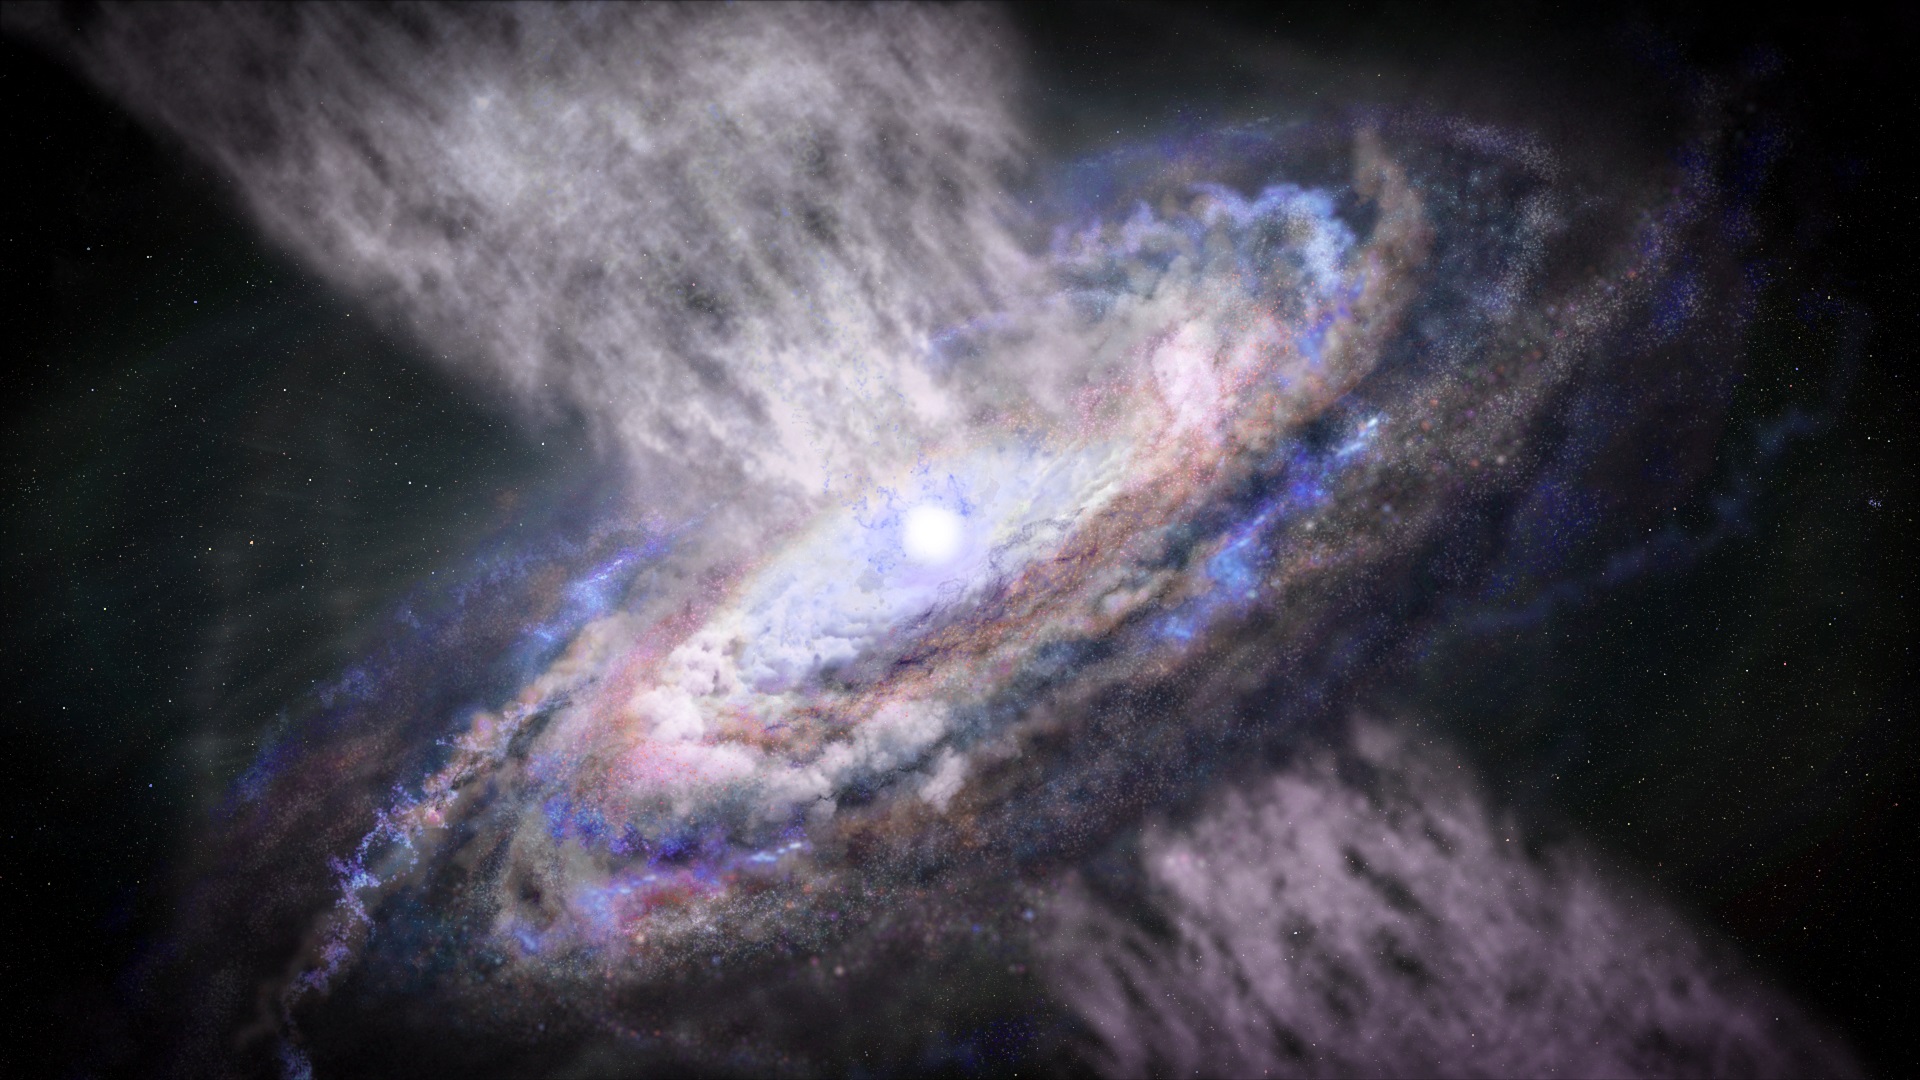 ASI - Scoperti raggi gamma prodotti nei poderosi venti emessi dai buchi neri:  nuovi indizi per conoscere la storia evolutiva delle galassie, compresa la nostra